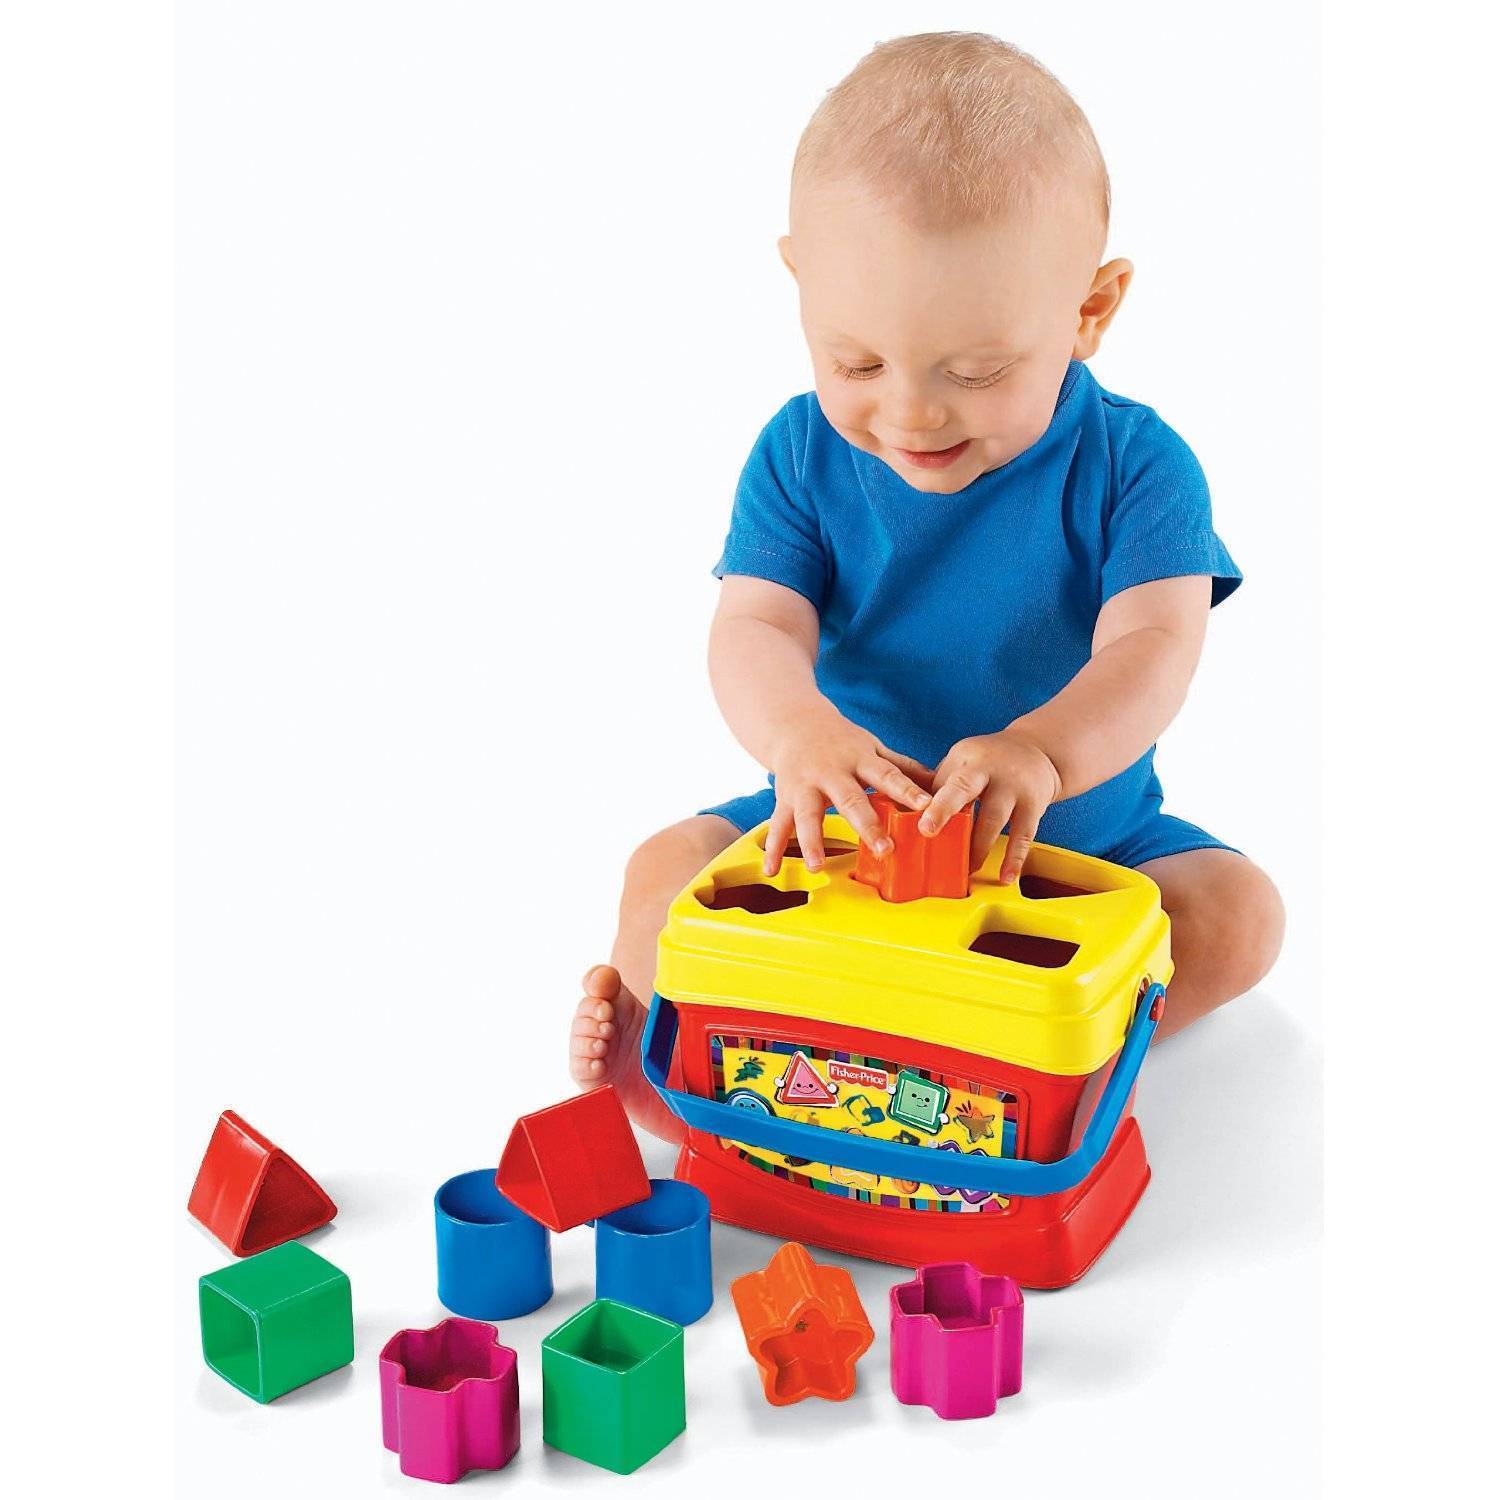 Про игрушки (5 месяцев) - игрушки для детей 5 месяцев - запись пользователя аленка (alenka9111) в сообществе выбор товаров в категории игрушки - babyblog.ru